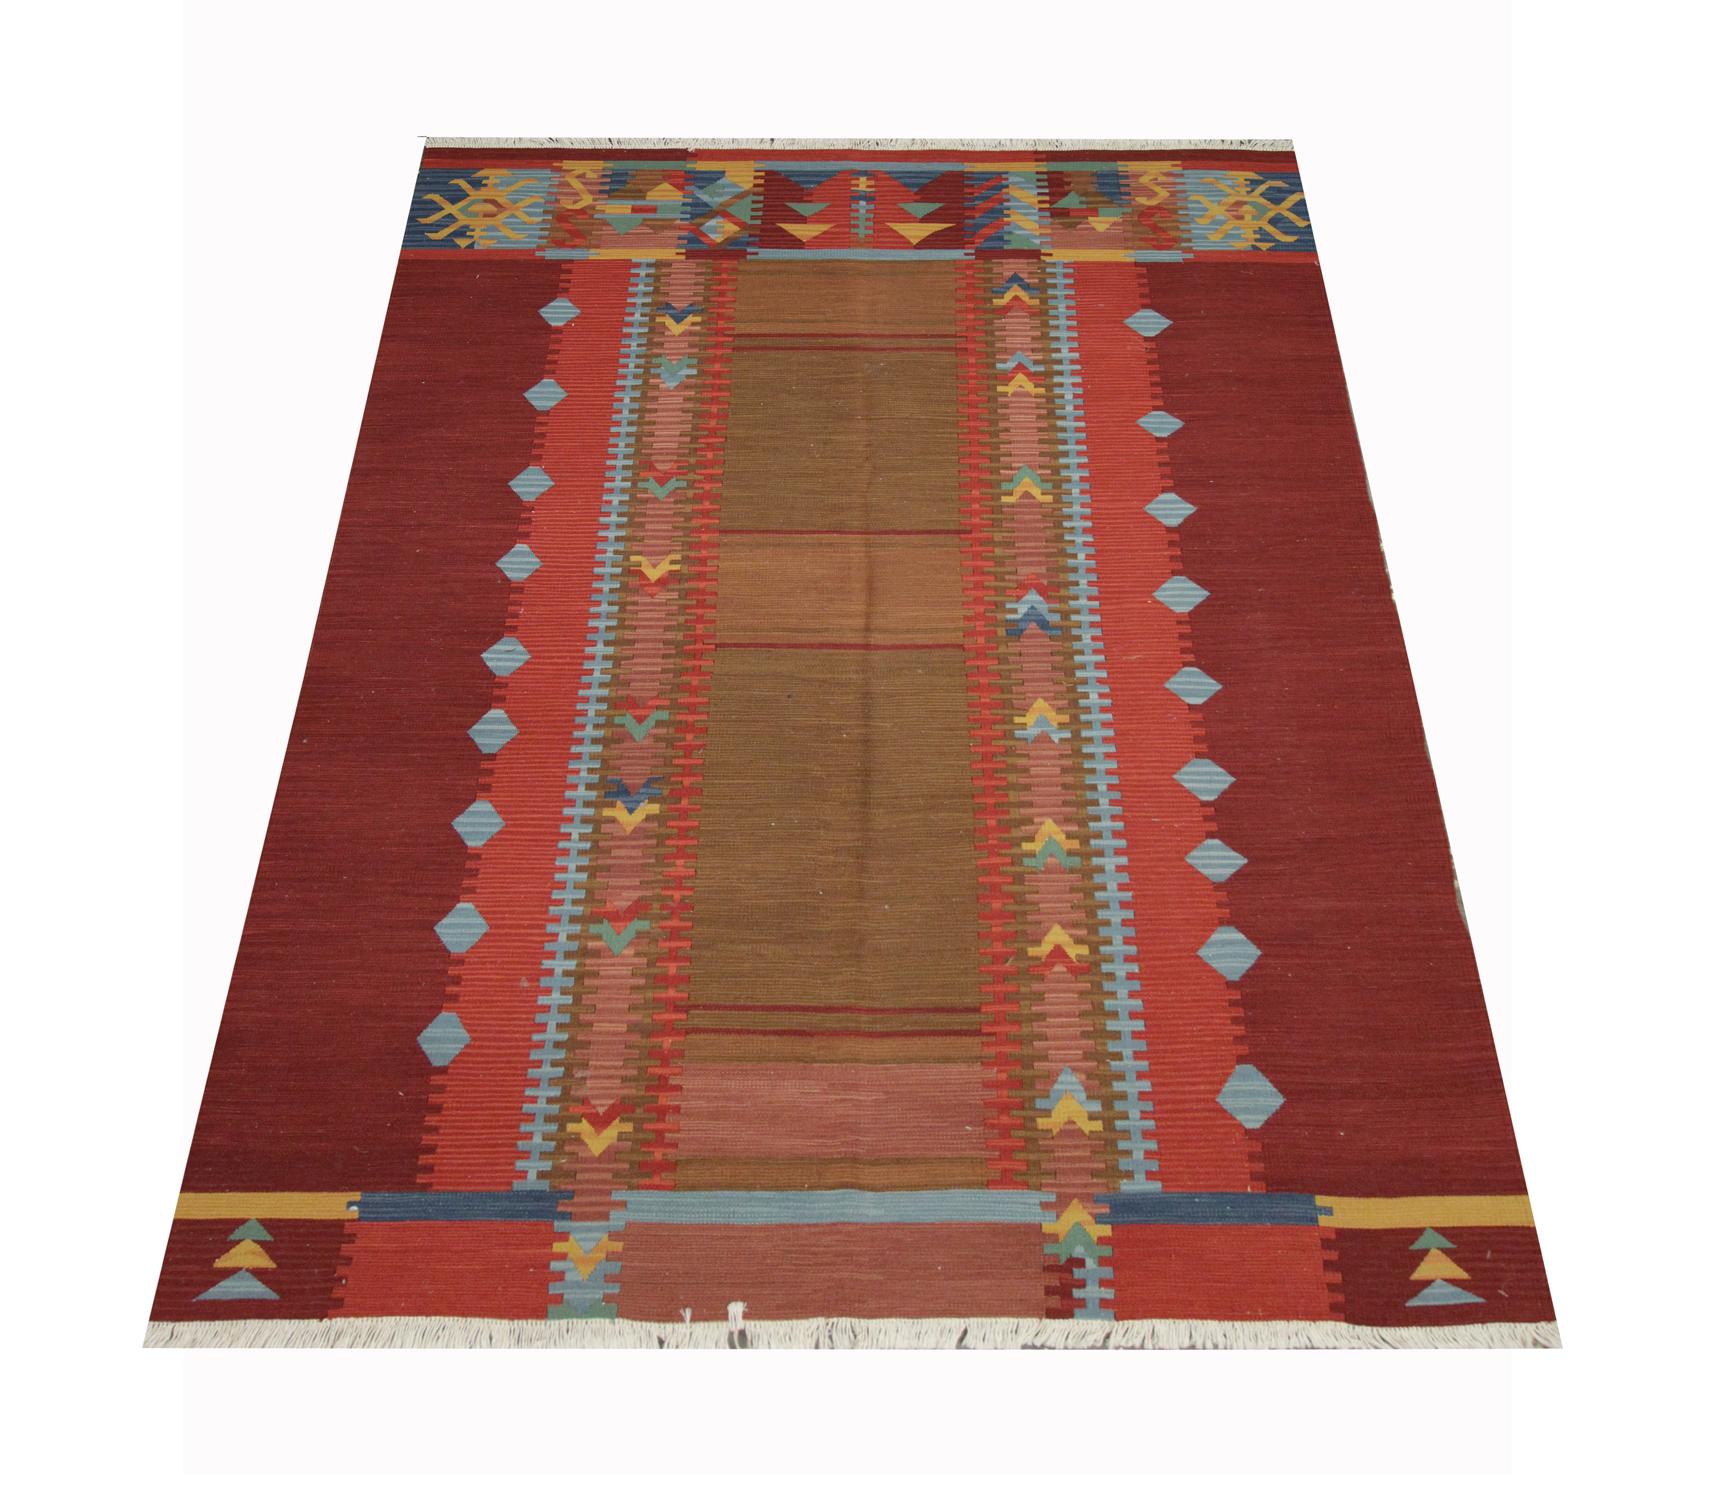 Dieser einzigartige moderne Kilim-Teppich wurde im Afghanistan des frühen 21. Jahrhunderts von Hand gewebt. Die erdigen Töne und die kühnen Muster dieses Teppichs machen ihn zu einem perfekten Akzentteppich für jeden Raum. Geeignet für das Styling